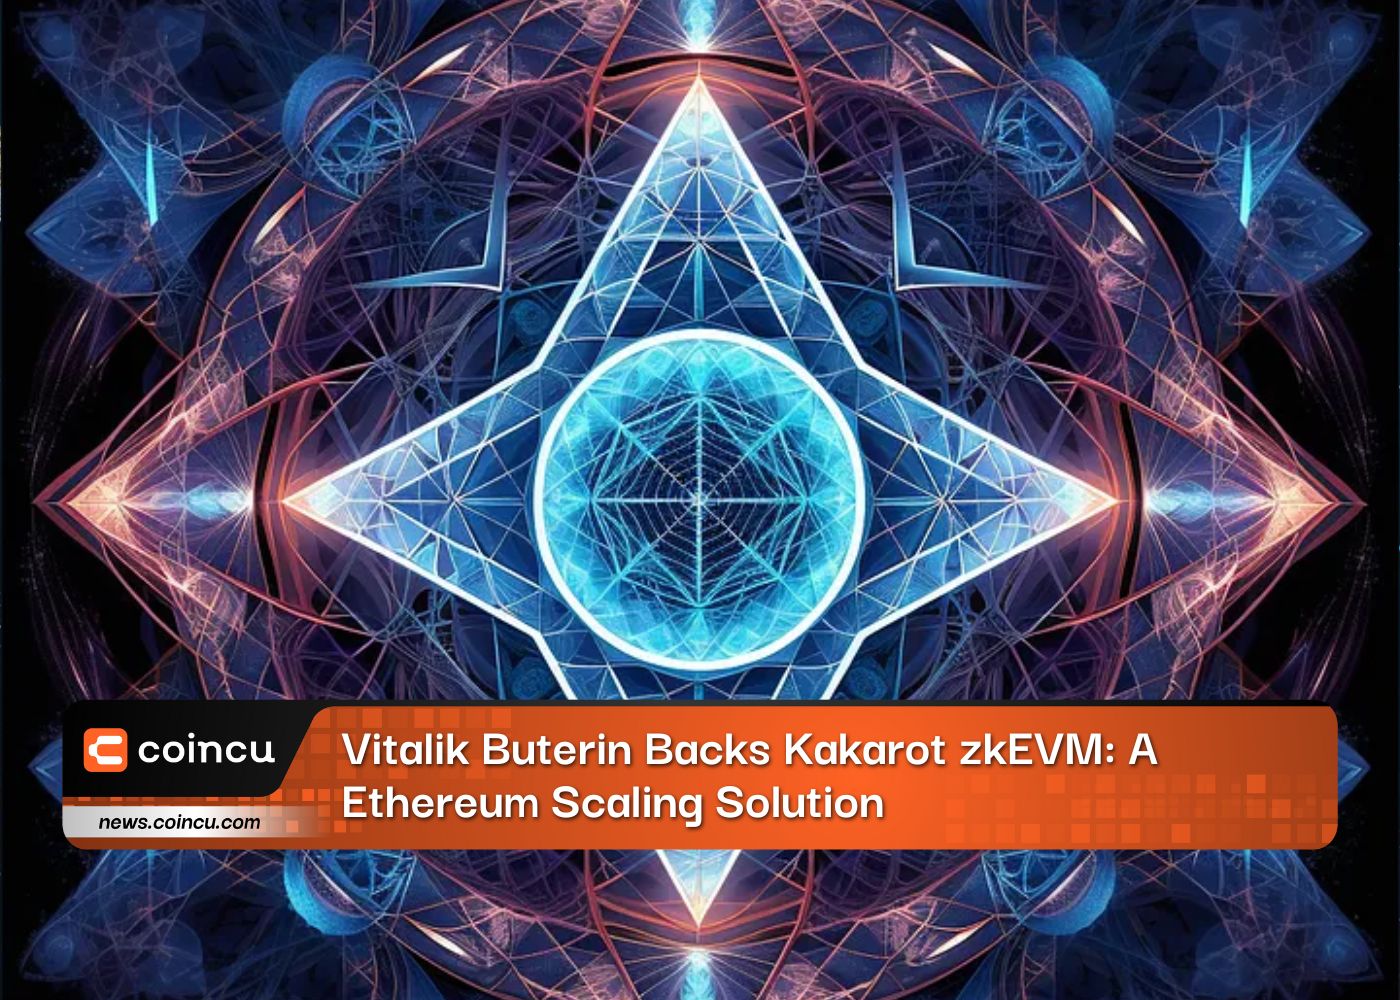 Vitalik Buterin Backs Kakarot zkEVM: A Ethereum Scaling Solution